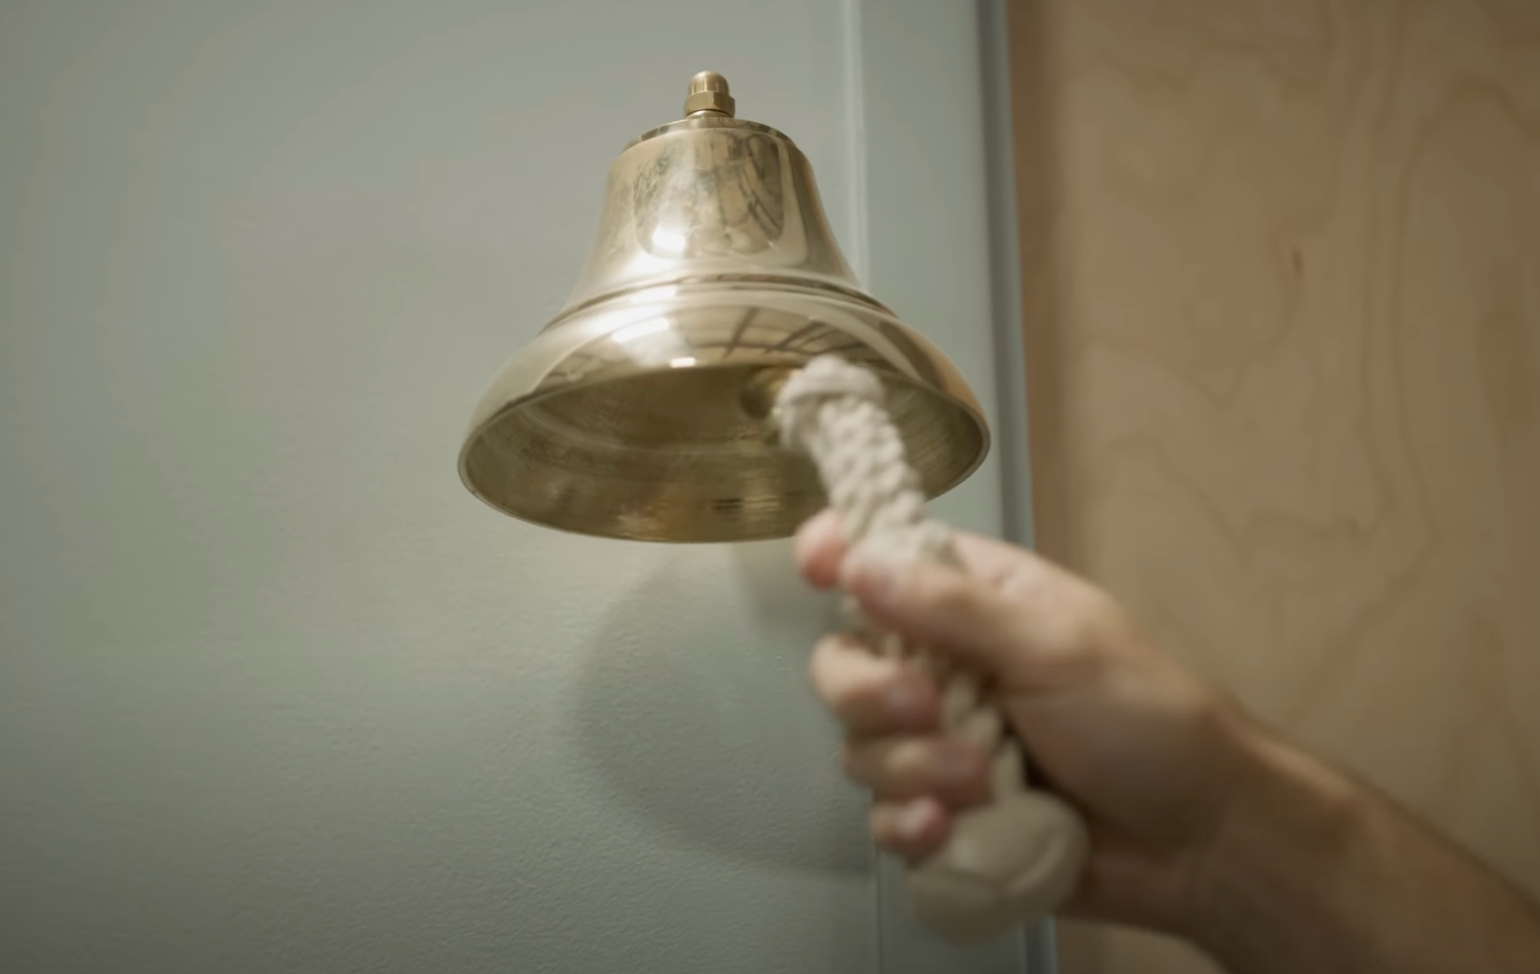 ringing bell for pergola order